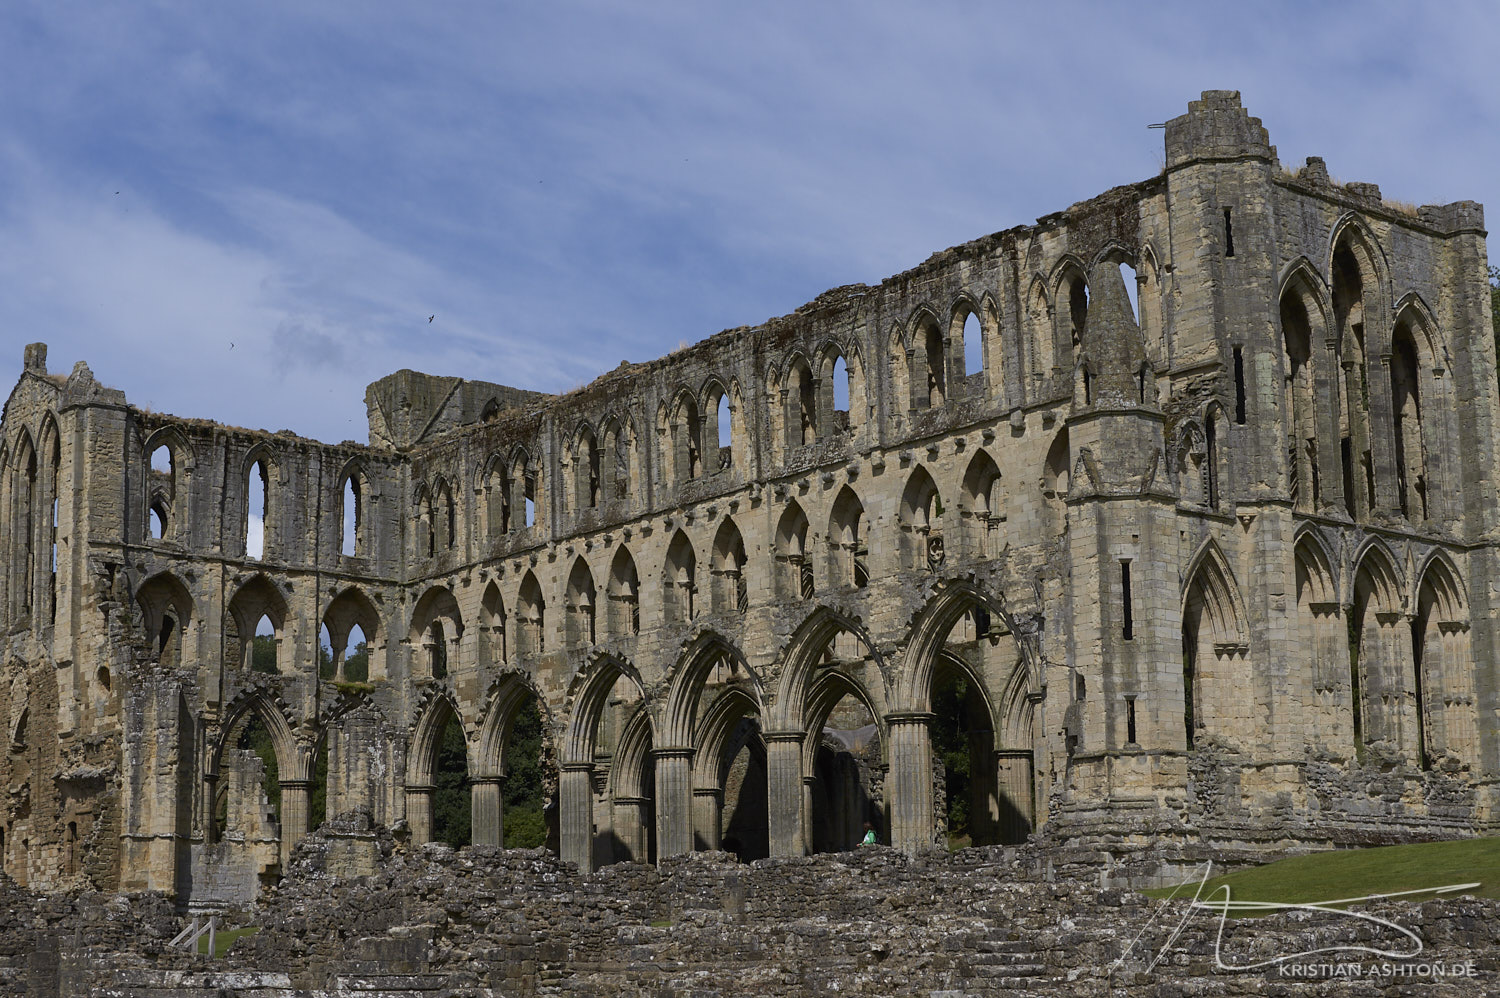 The breathtaking Rievaulx Abbey, built 1132